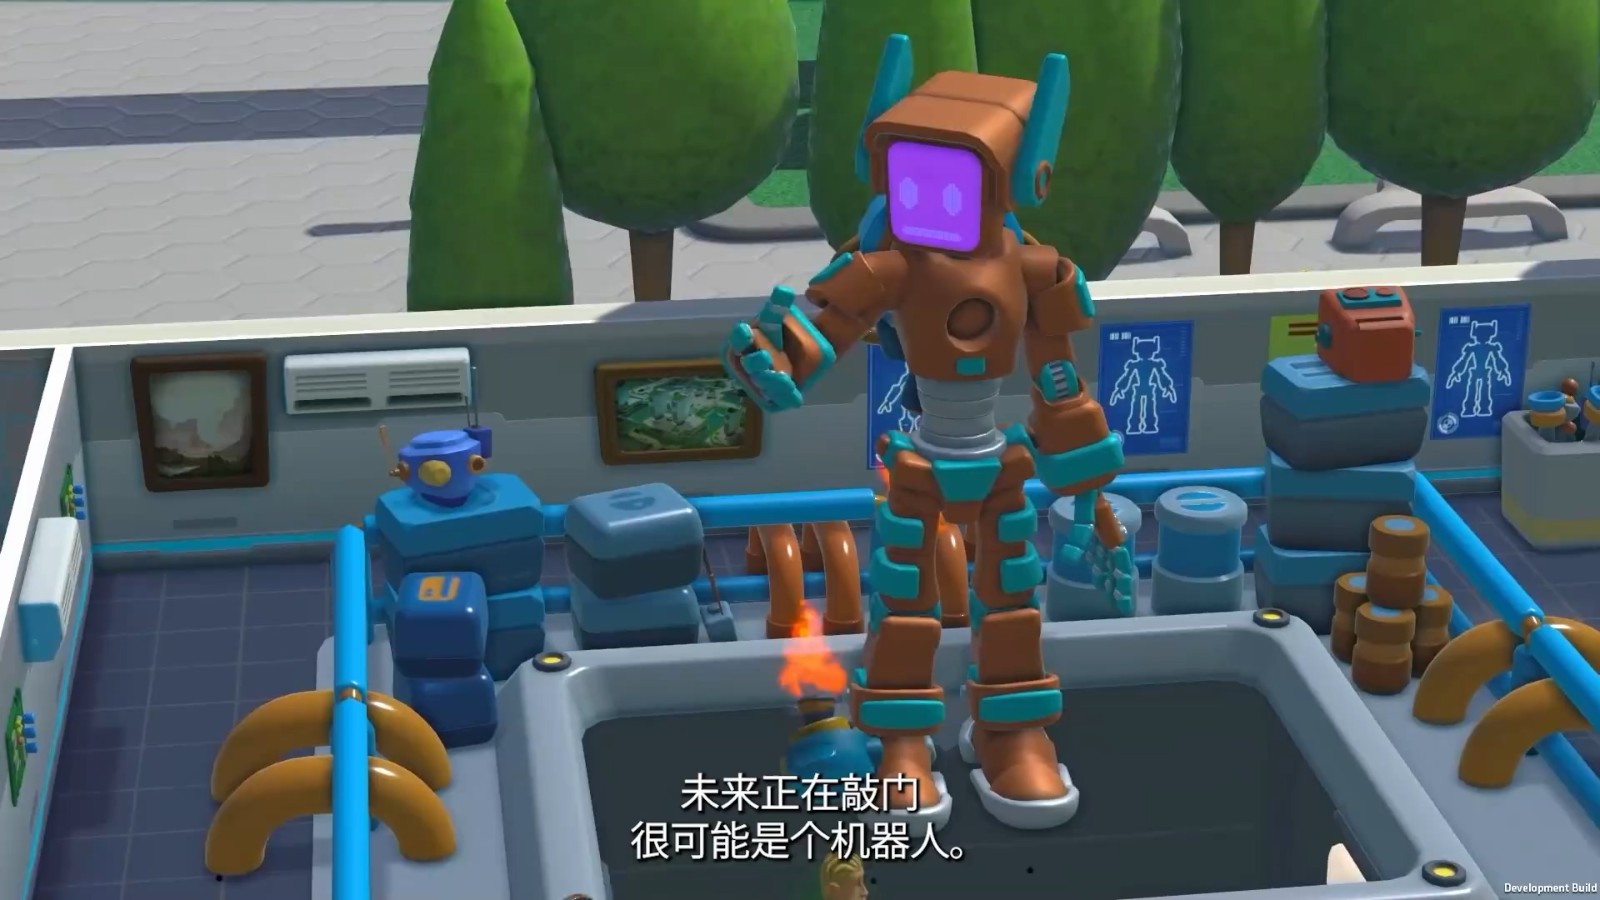 《双点校园》“机器人系”预告 打造自己的巨型机器人